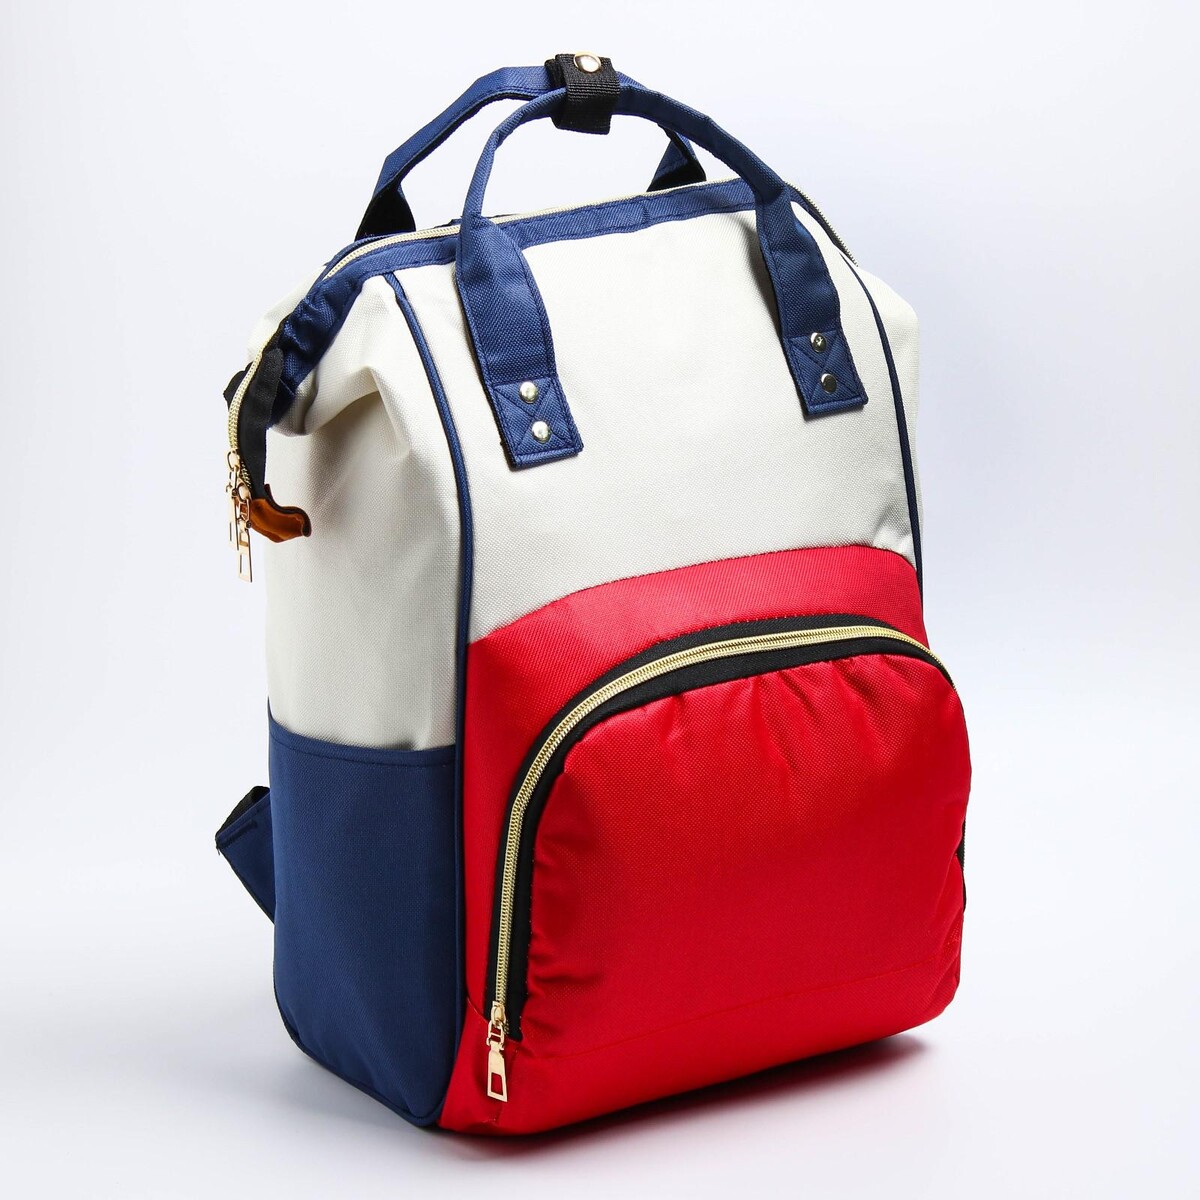 Рюкзак женский с термокарманом, термосумка - портфель, цвет красный рюкзак kingkong i 10 wb 9062 черн средний фоторюкзак